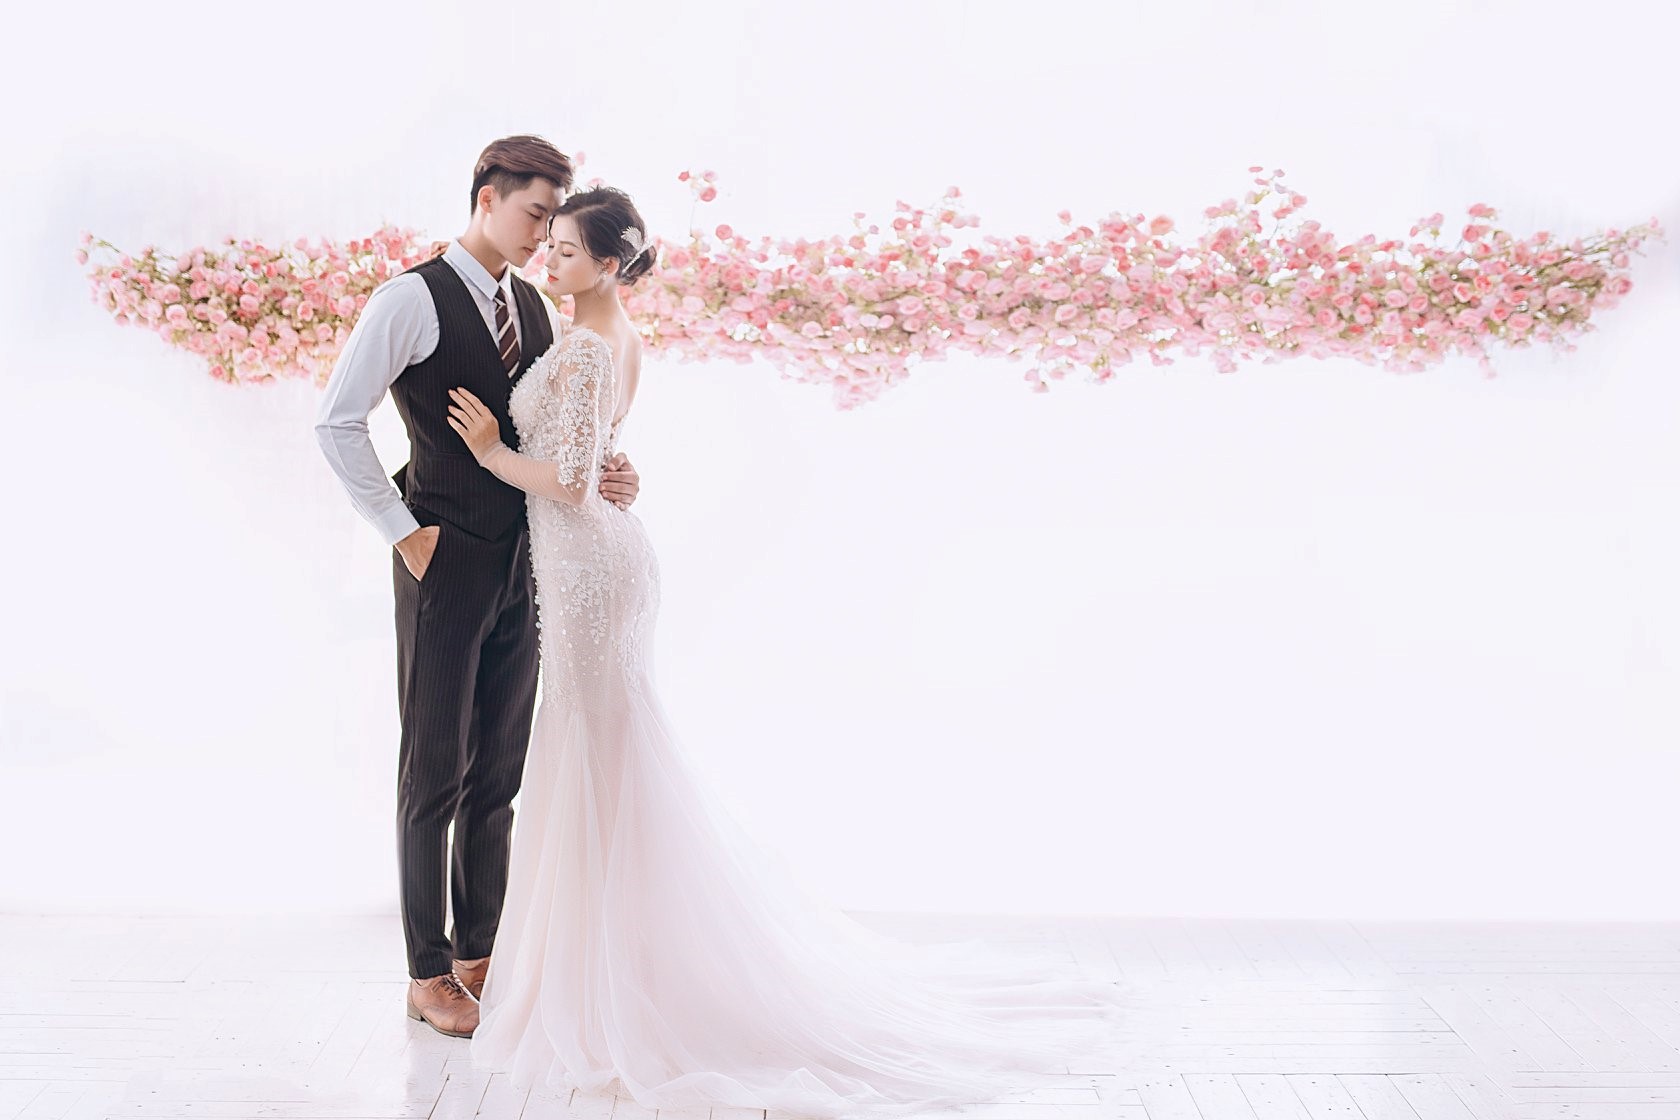 Hãy xem những bức ảnh cưới đẹp tuyệt vời tại Phú Yên, nơi có những cảnh đẹp hoang sơ, trang trí đẹp mắt và ánh sáng hoàn hảo. Bức ảnh cưới của bạn sẽ trở thành kỷ niệm đáng nhớ với bầu trời xanh ngổn ngang và nét đẹp tự nhiên đầy yêu thương.